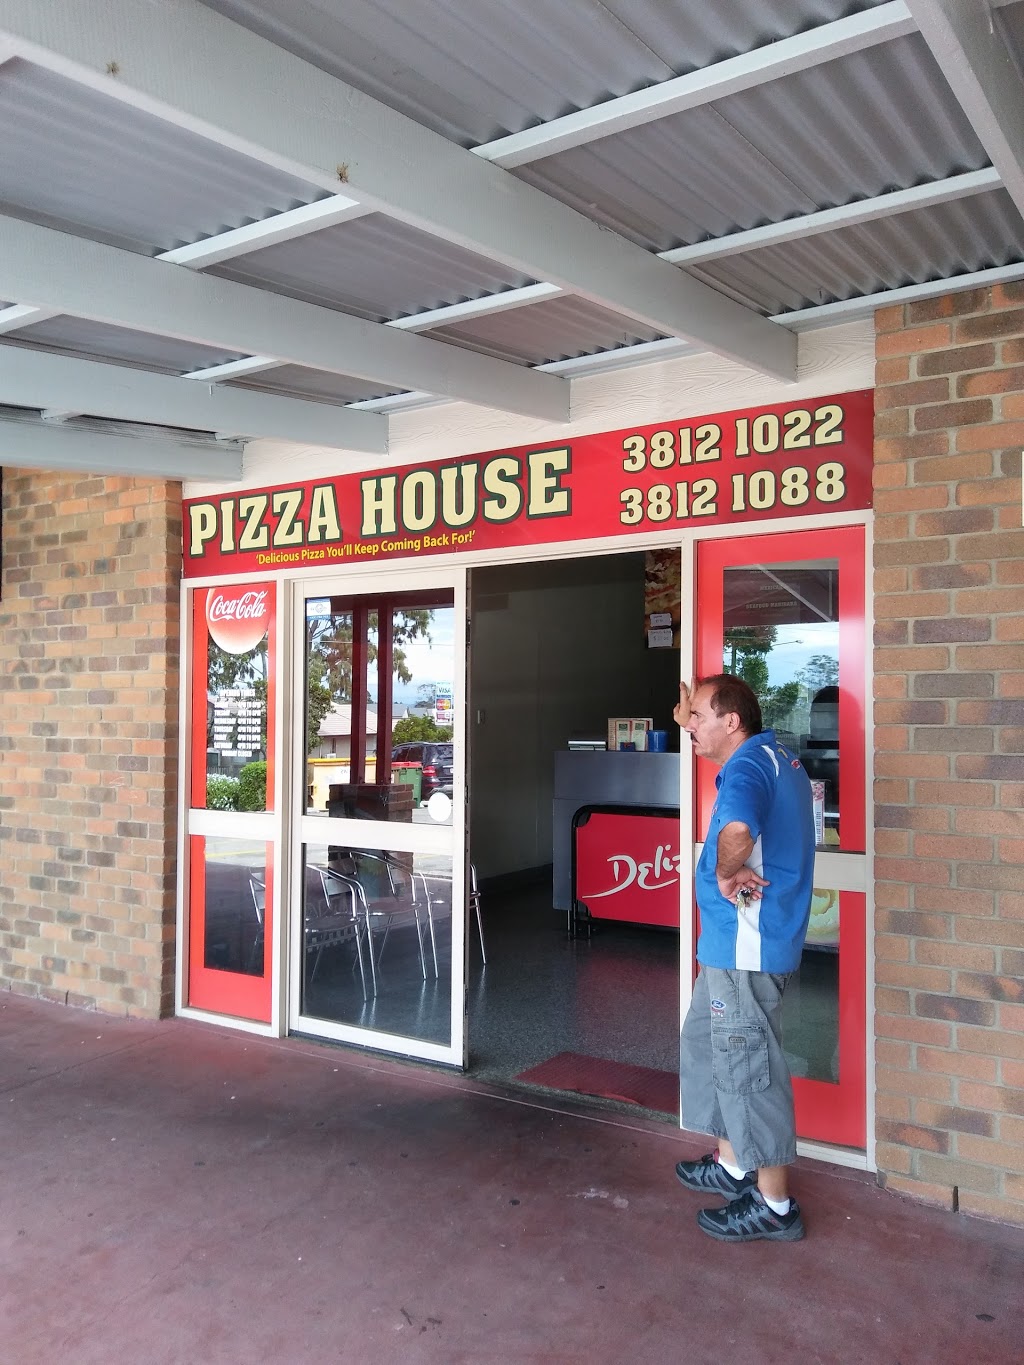 Pizza House | restaurant | 68-70 Samford Rd, Leichhardt QLD 4305, Australia | 0738121022 OR +61 7 3812 1022